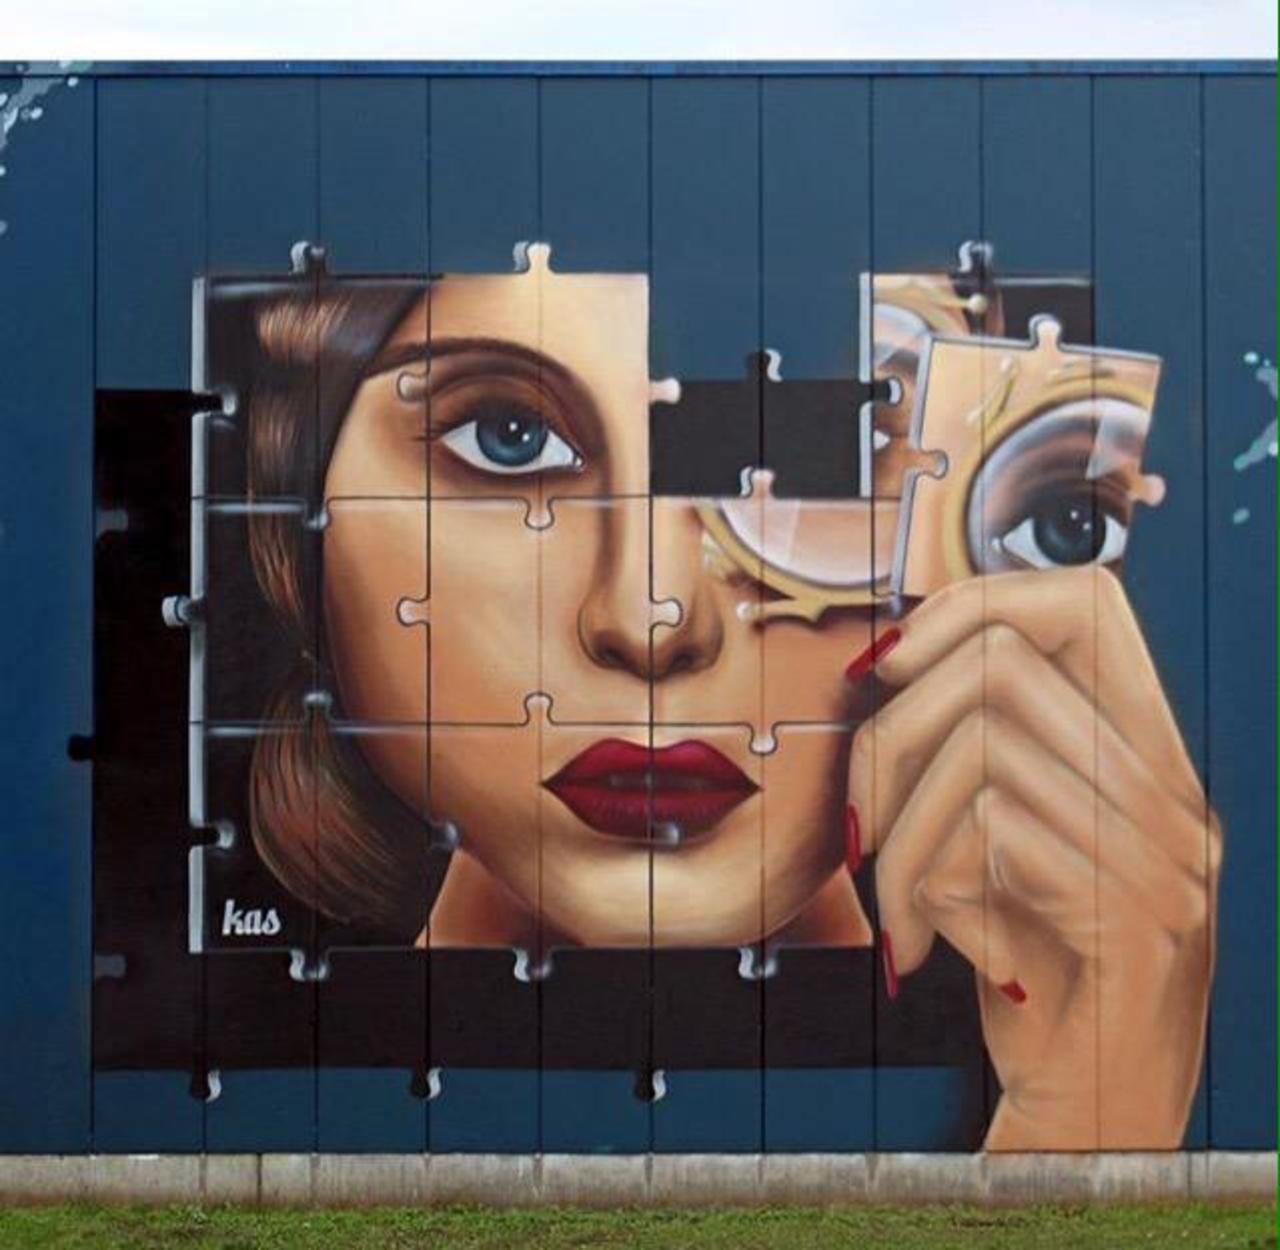 Kas Art's new Street Art "Piece of me" in Aalst Belgium 

#art #graffiti #mural #streetart http://t.co/TszbuuiJrH